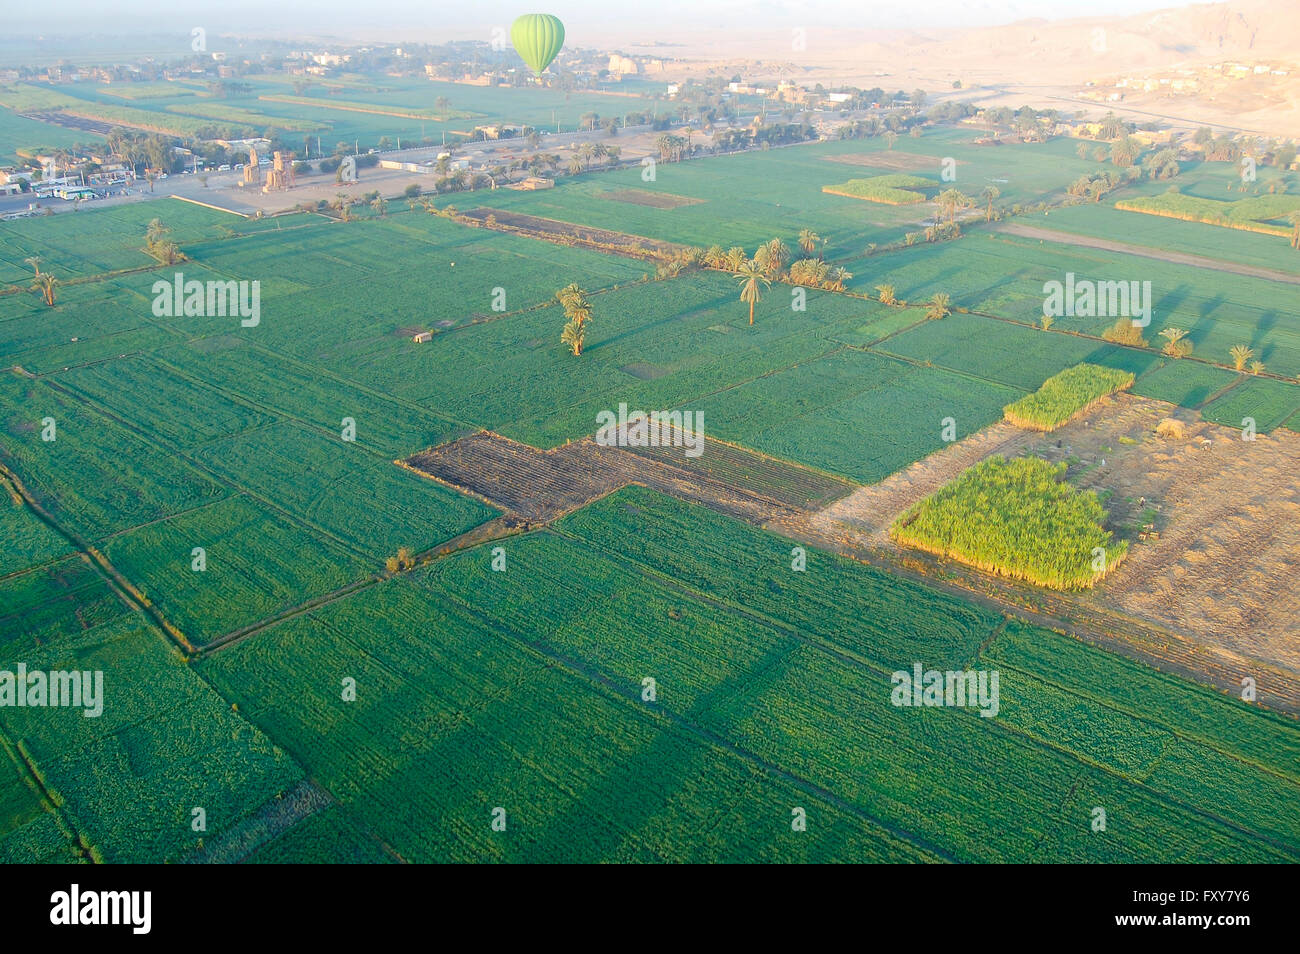 La piantagione di canna da zucchero - Egitto Foto Stock